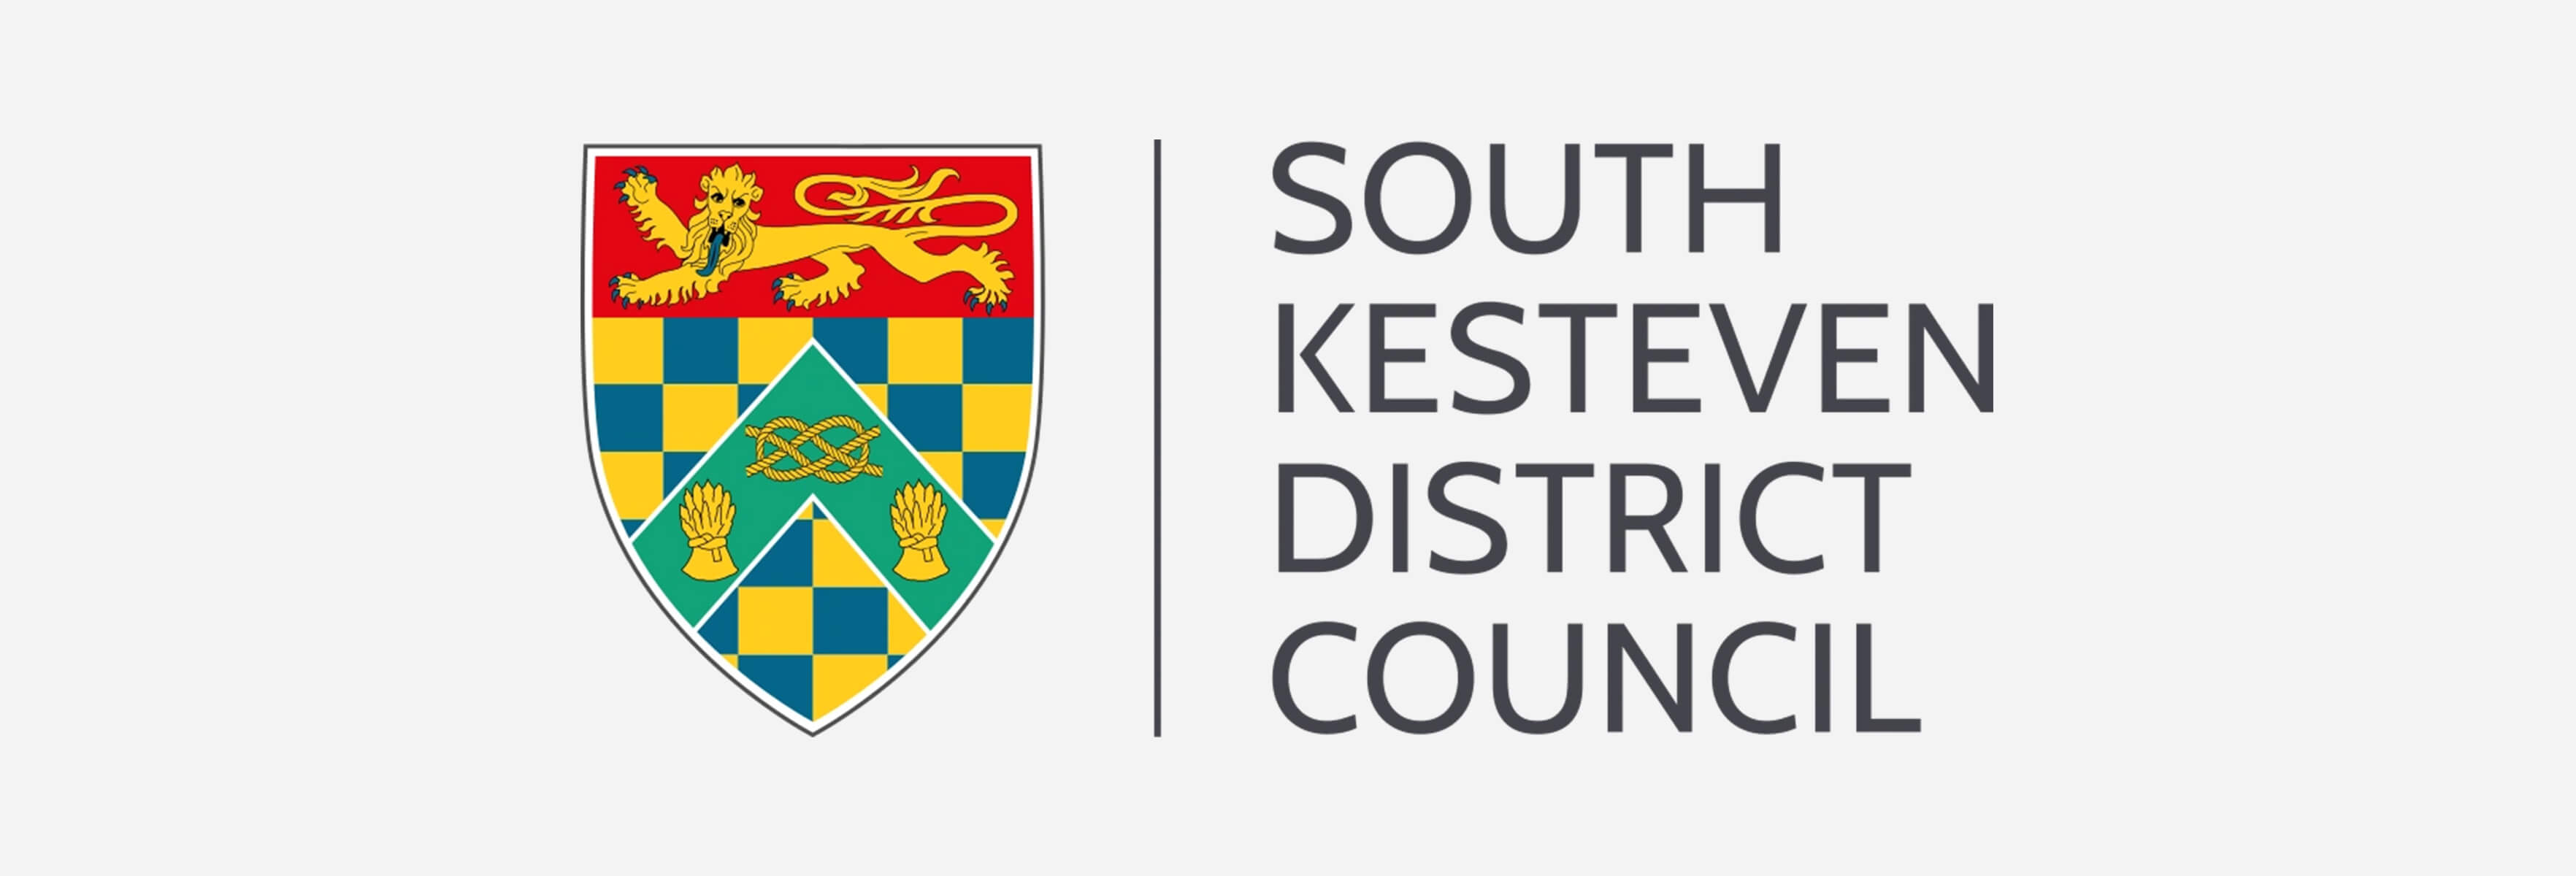 South Kesteven District Council 